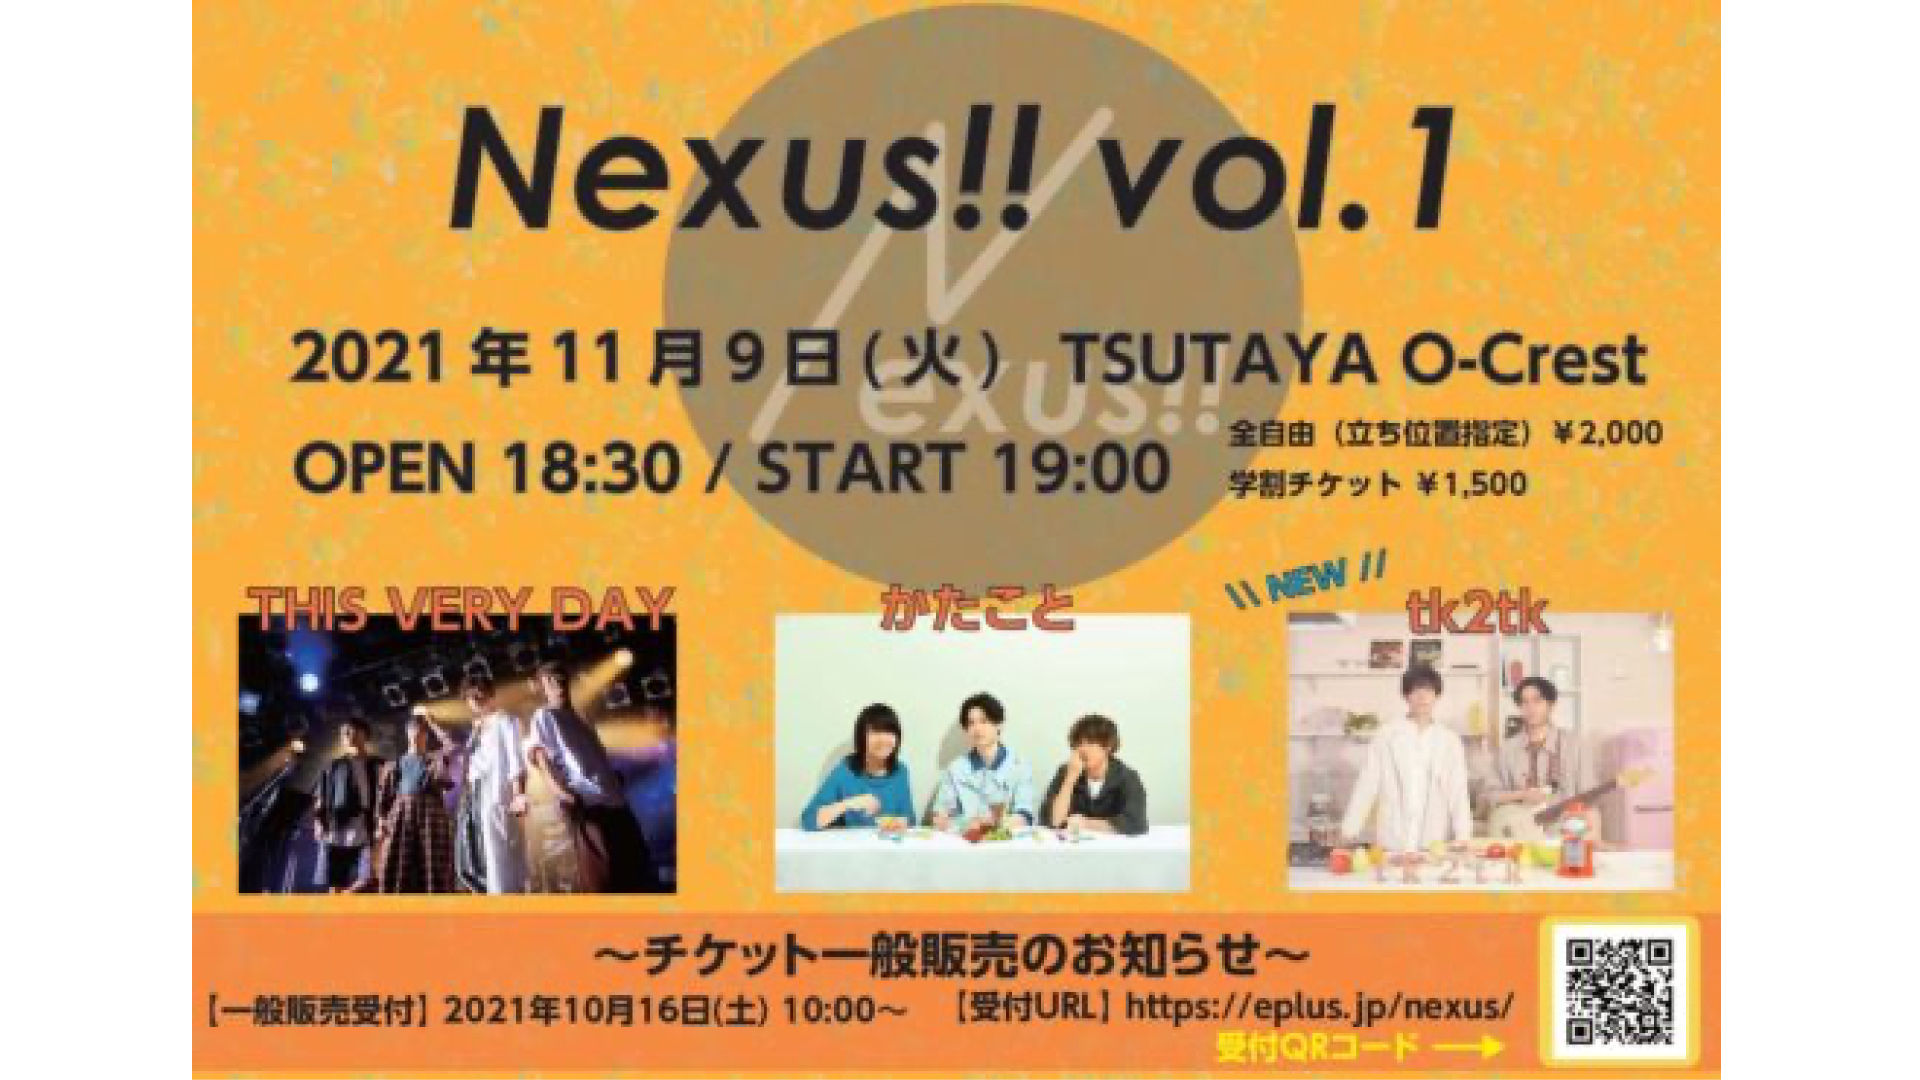 Nexus!! vol.1